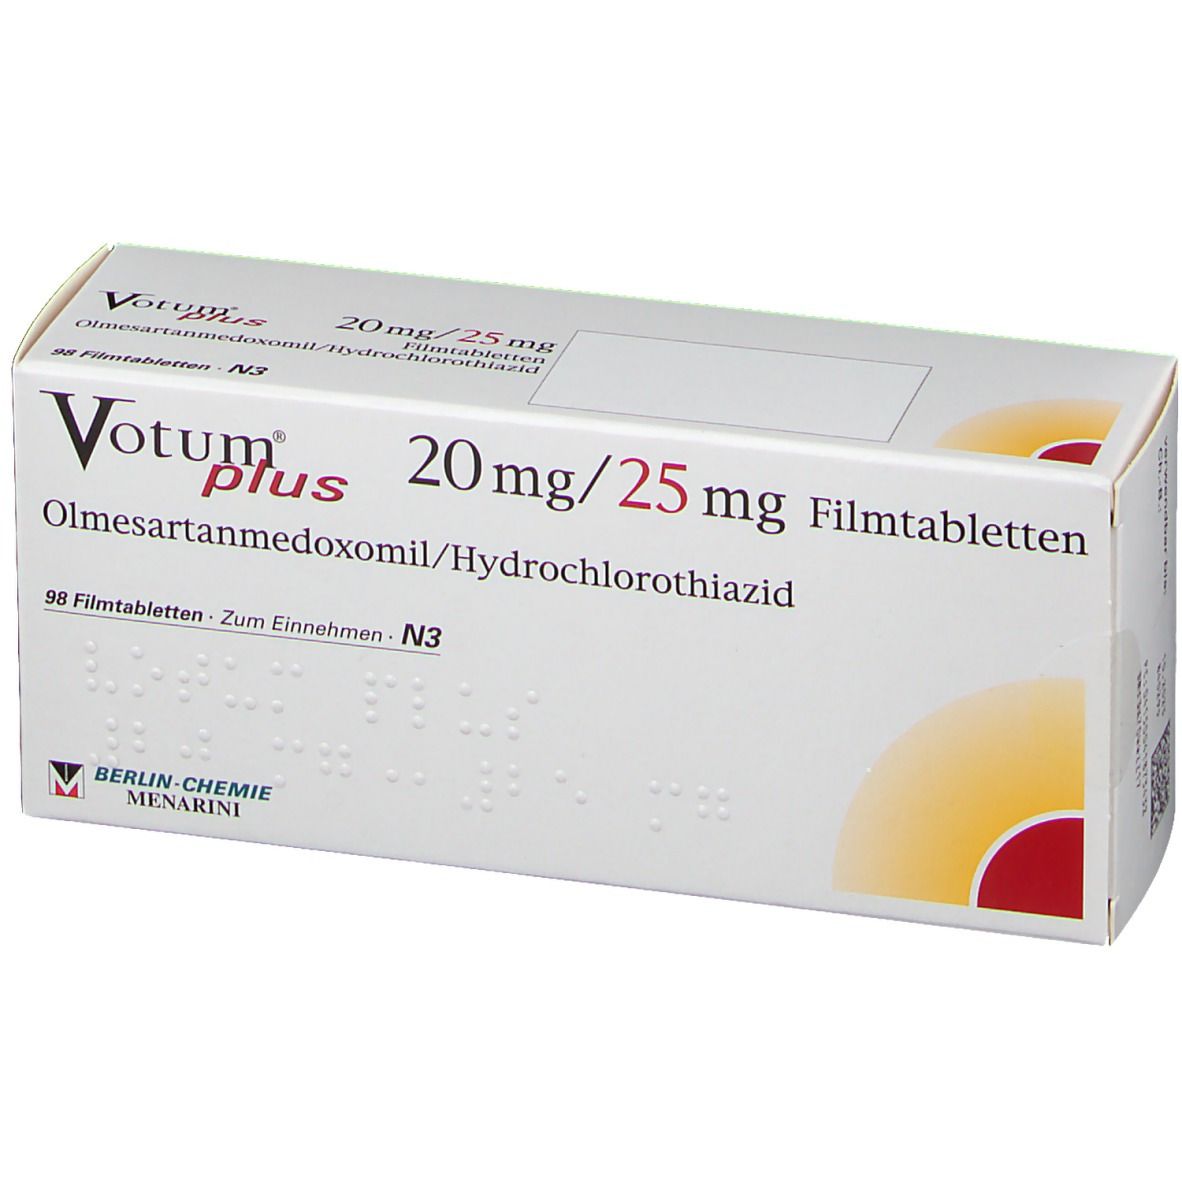 Votum® Plus 20 mg/25 mg